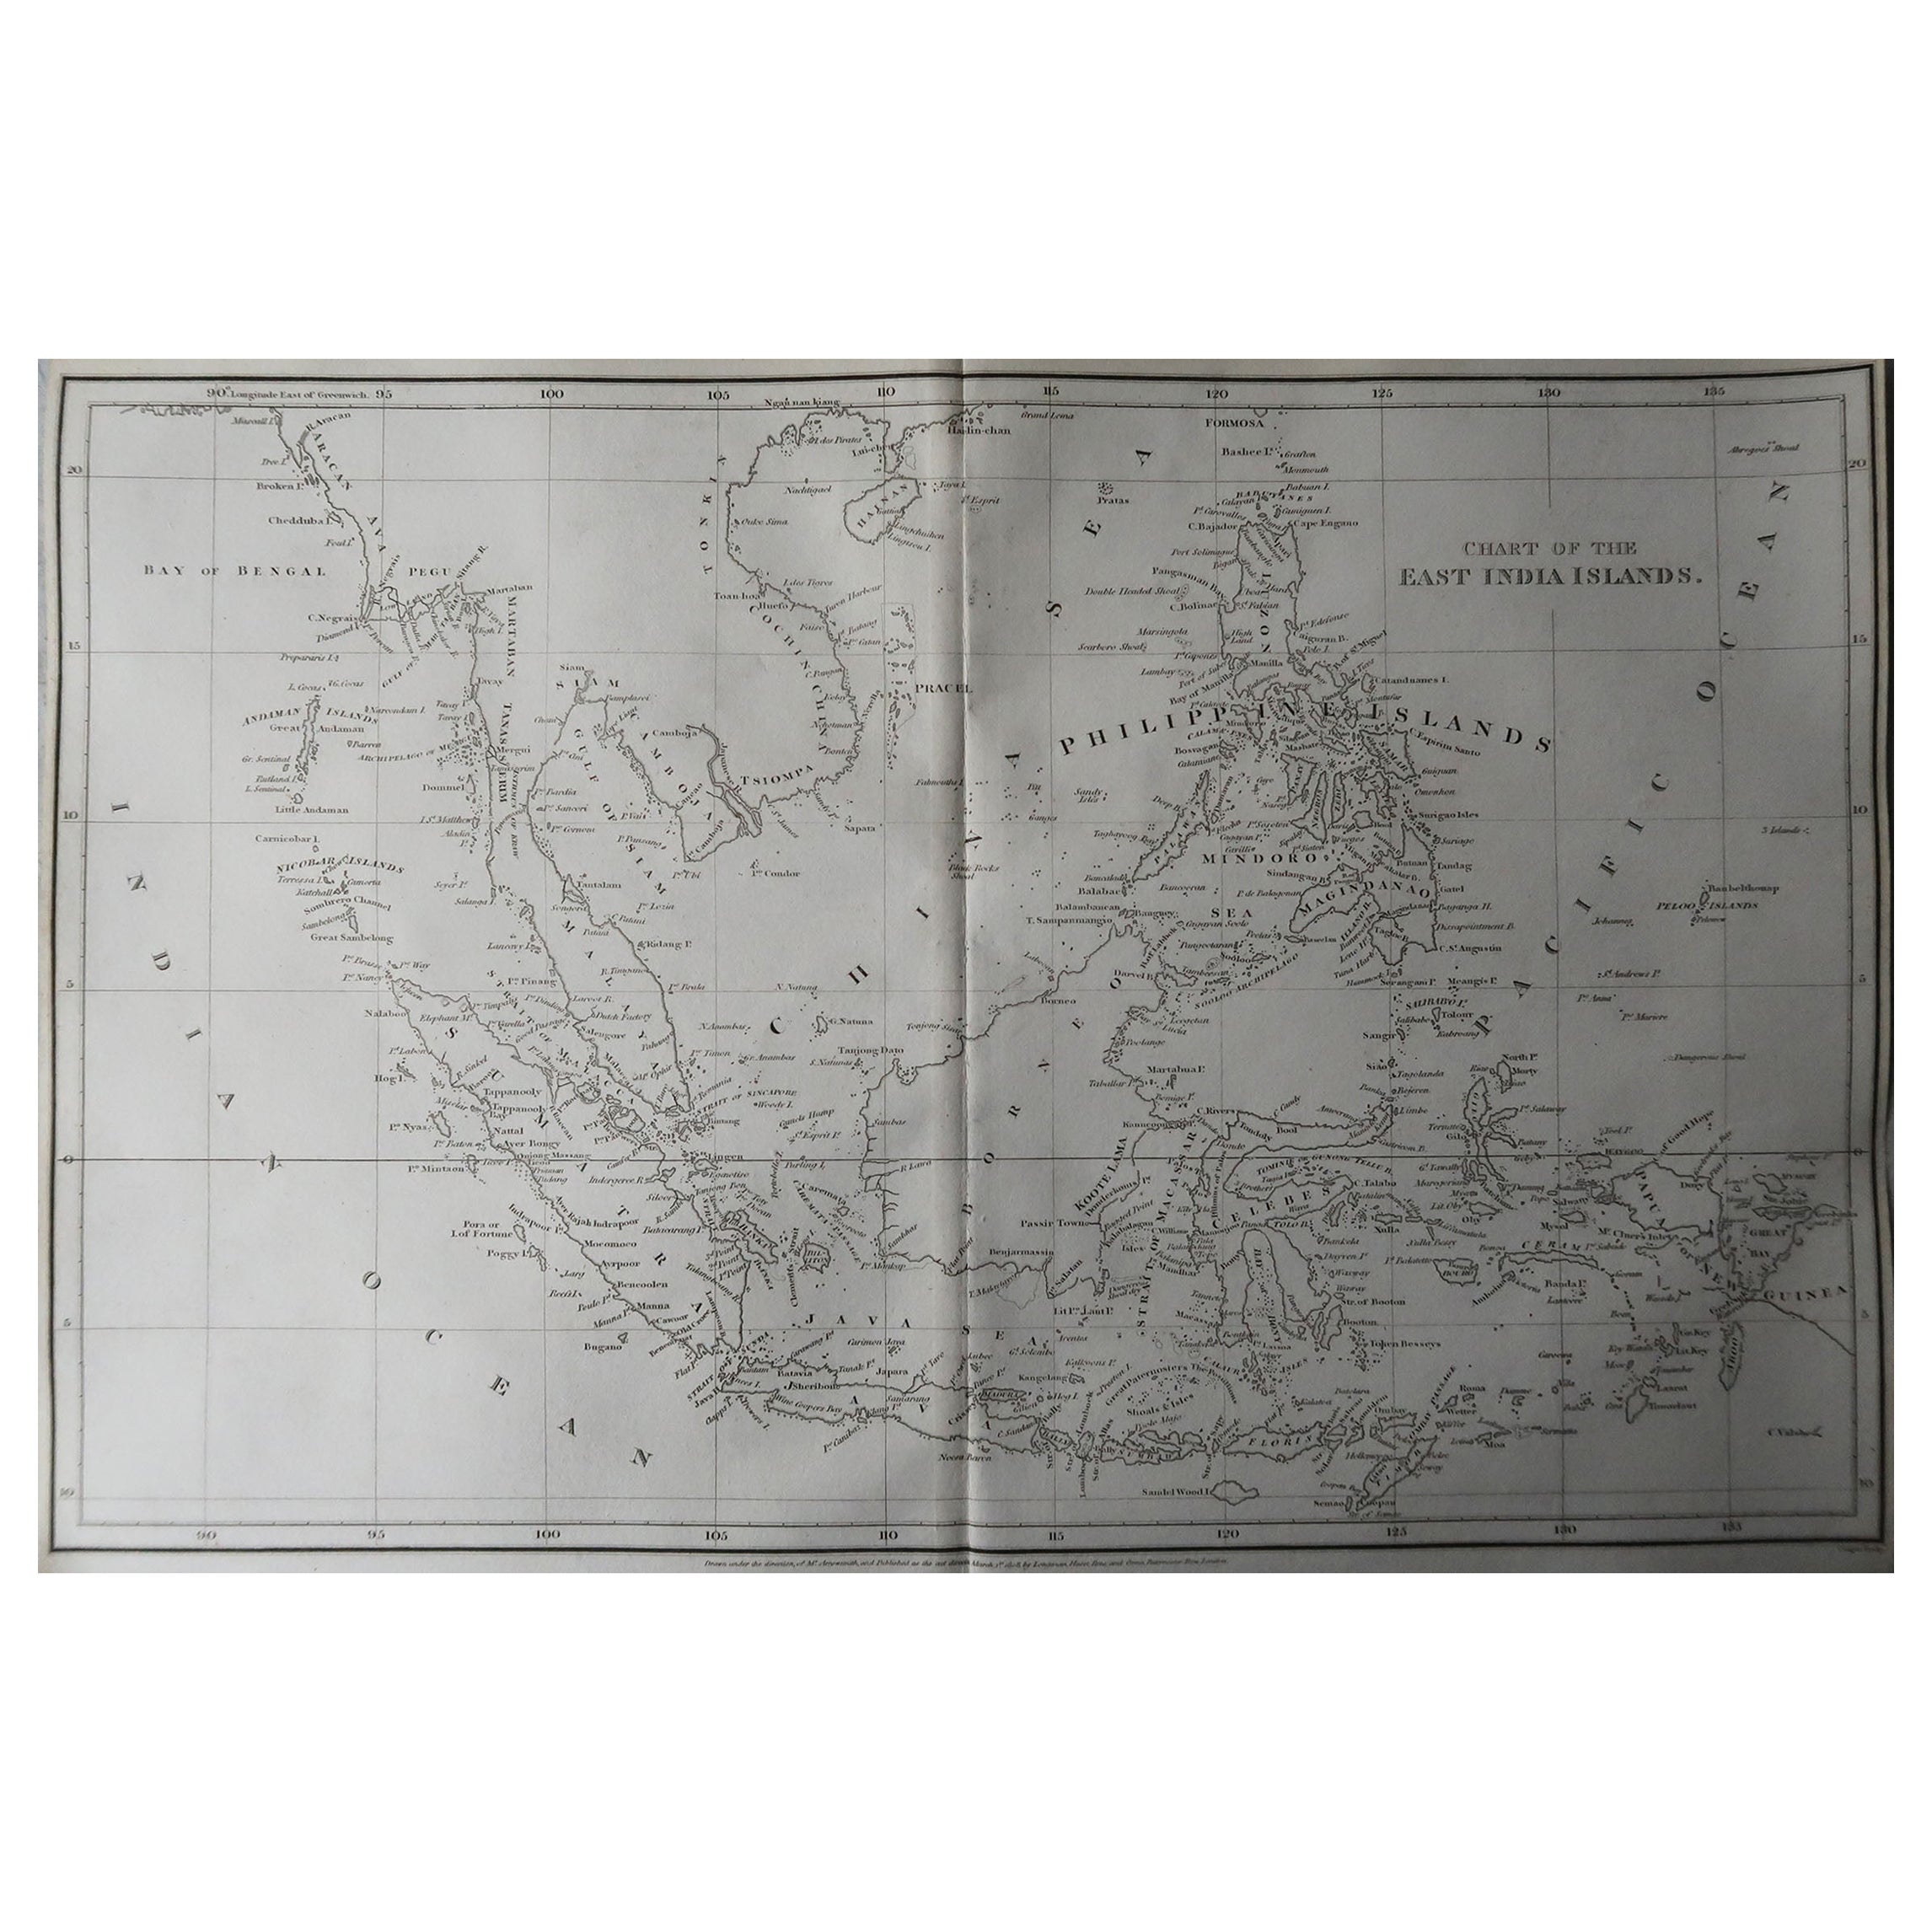 Grande carte de l'Asie du Sud-Est

Dessiné sous la direction d'Arrowsmith.

Gravure sur cuivre

Publié par Longman, Hurst, Rees, Orme et Brown, 1820

Non encadré.